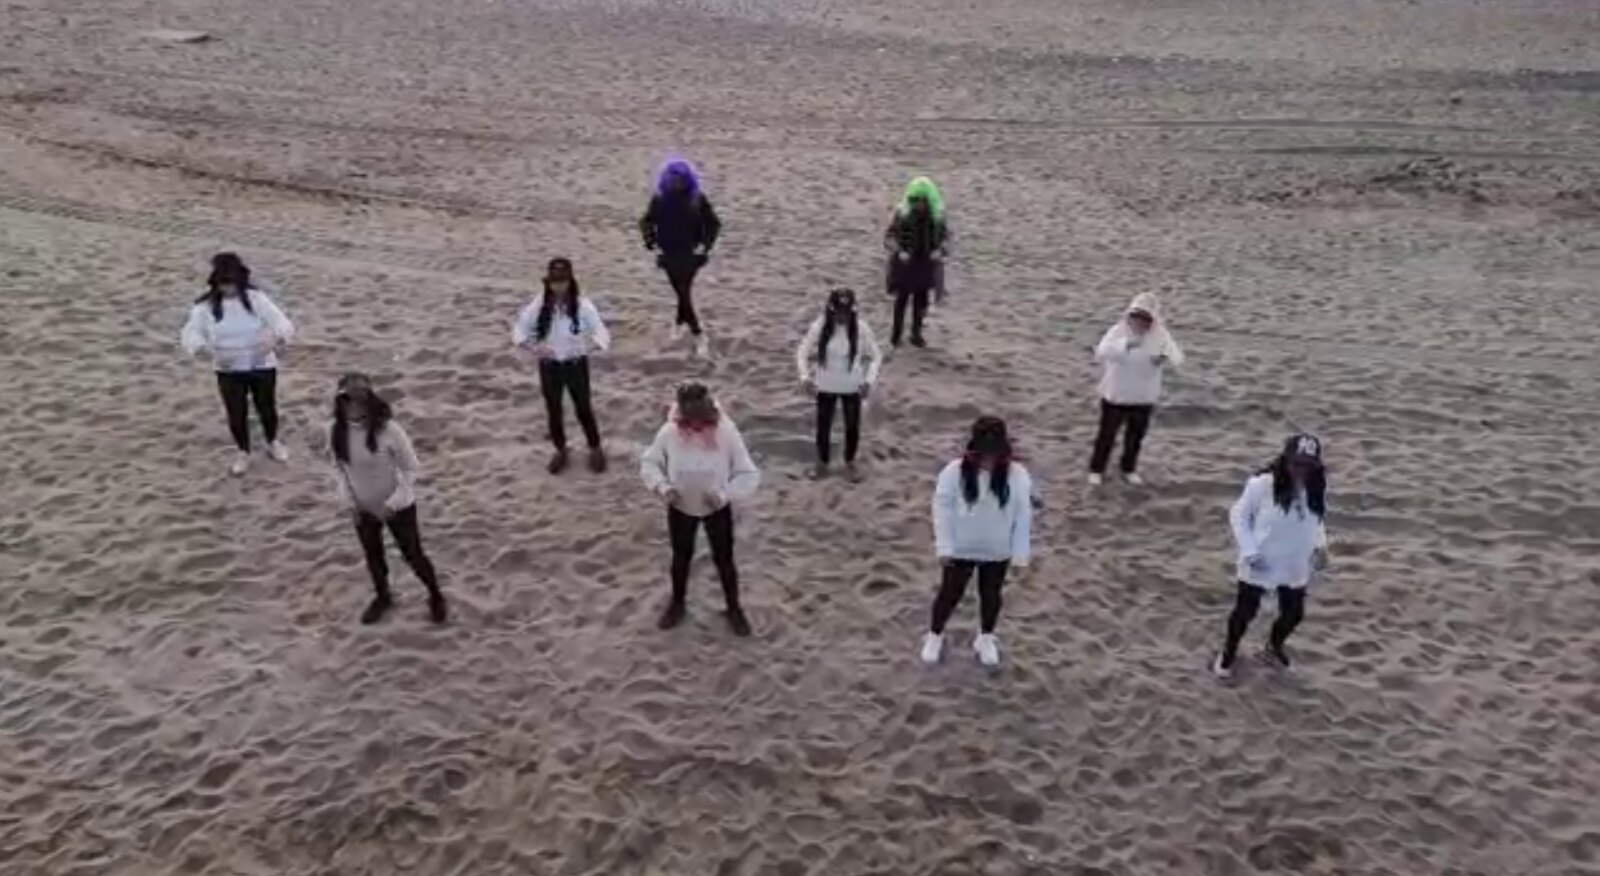 FOTOGRAFÍA. BARCELONA (ESPAÑA), 08.03.2020. Mujeres son protagonistas de un vídeo en el que cantan y bailan por la mujer contra el feminismo. Ñ Pueblo (1)